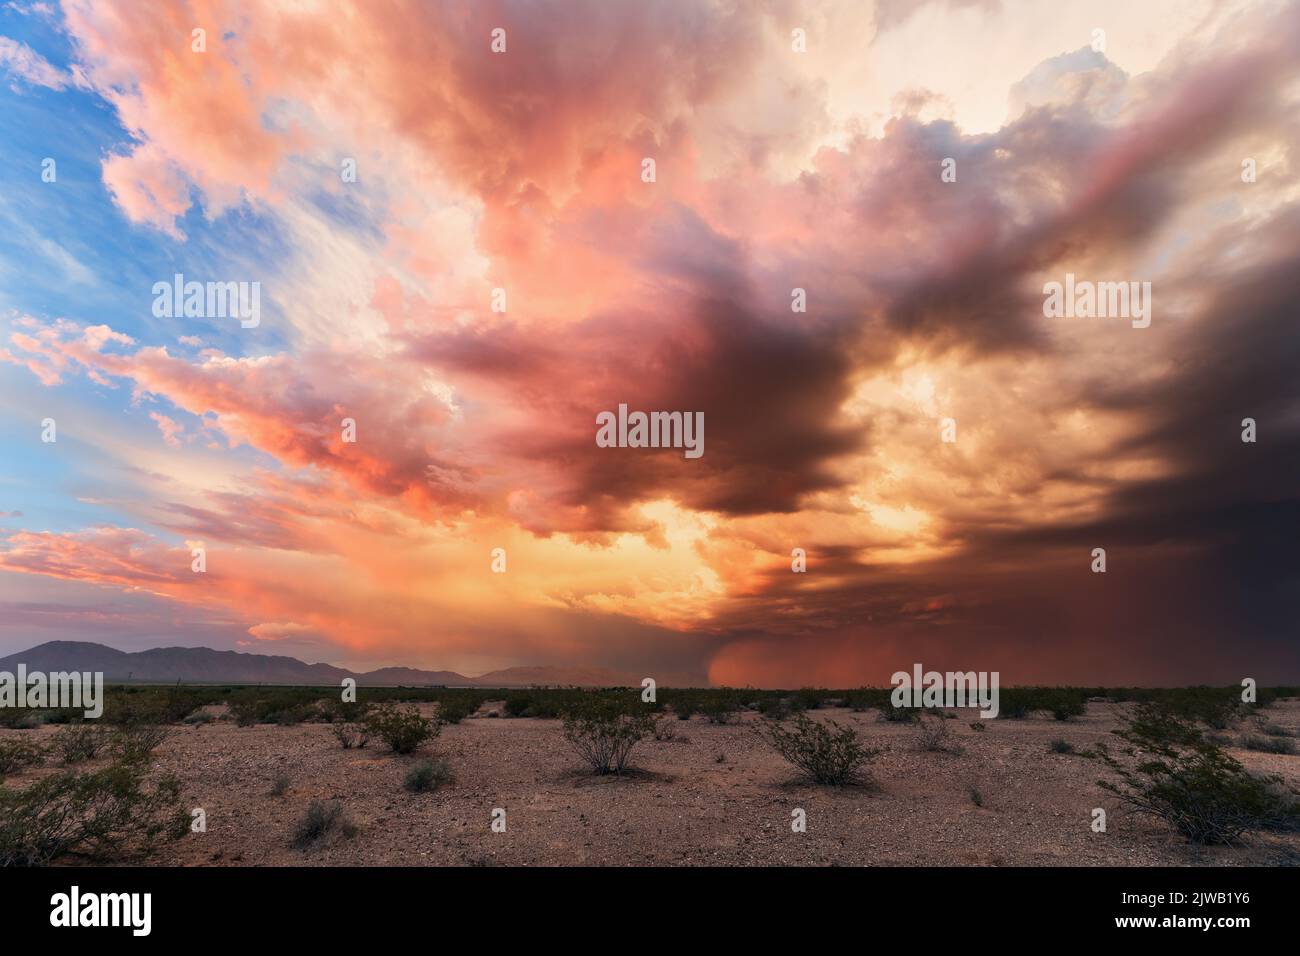 La mousson saison coucher de soleil et tempête de poussière dans le désert de l'Arizona Banque D'Images